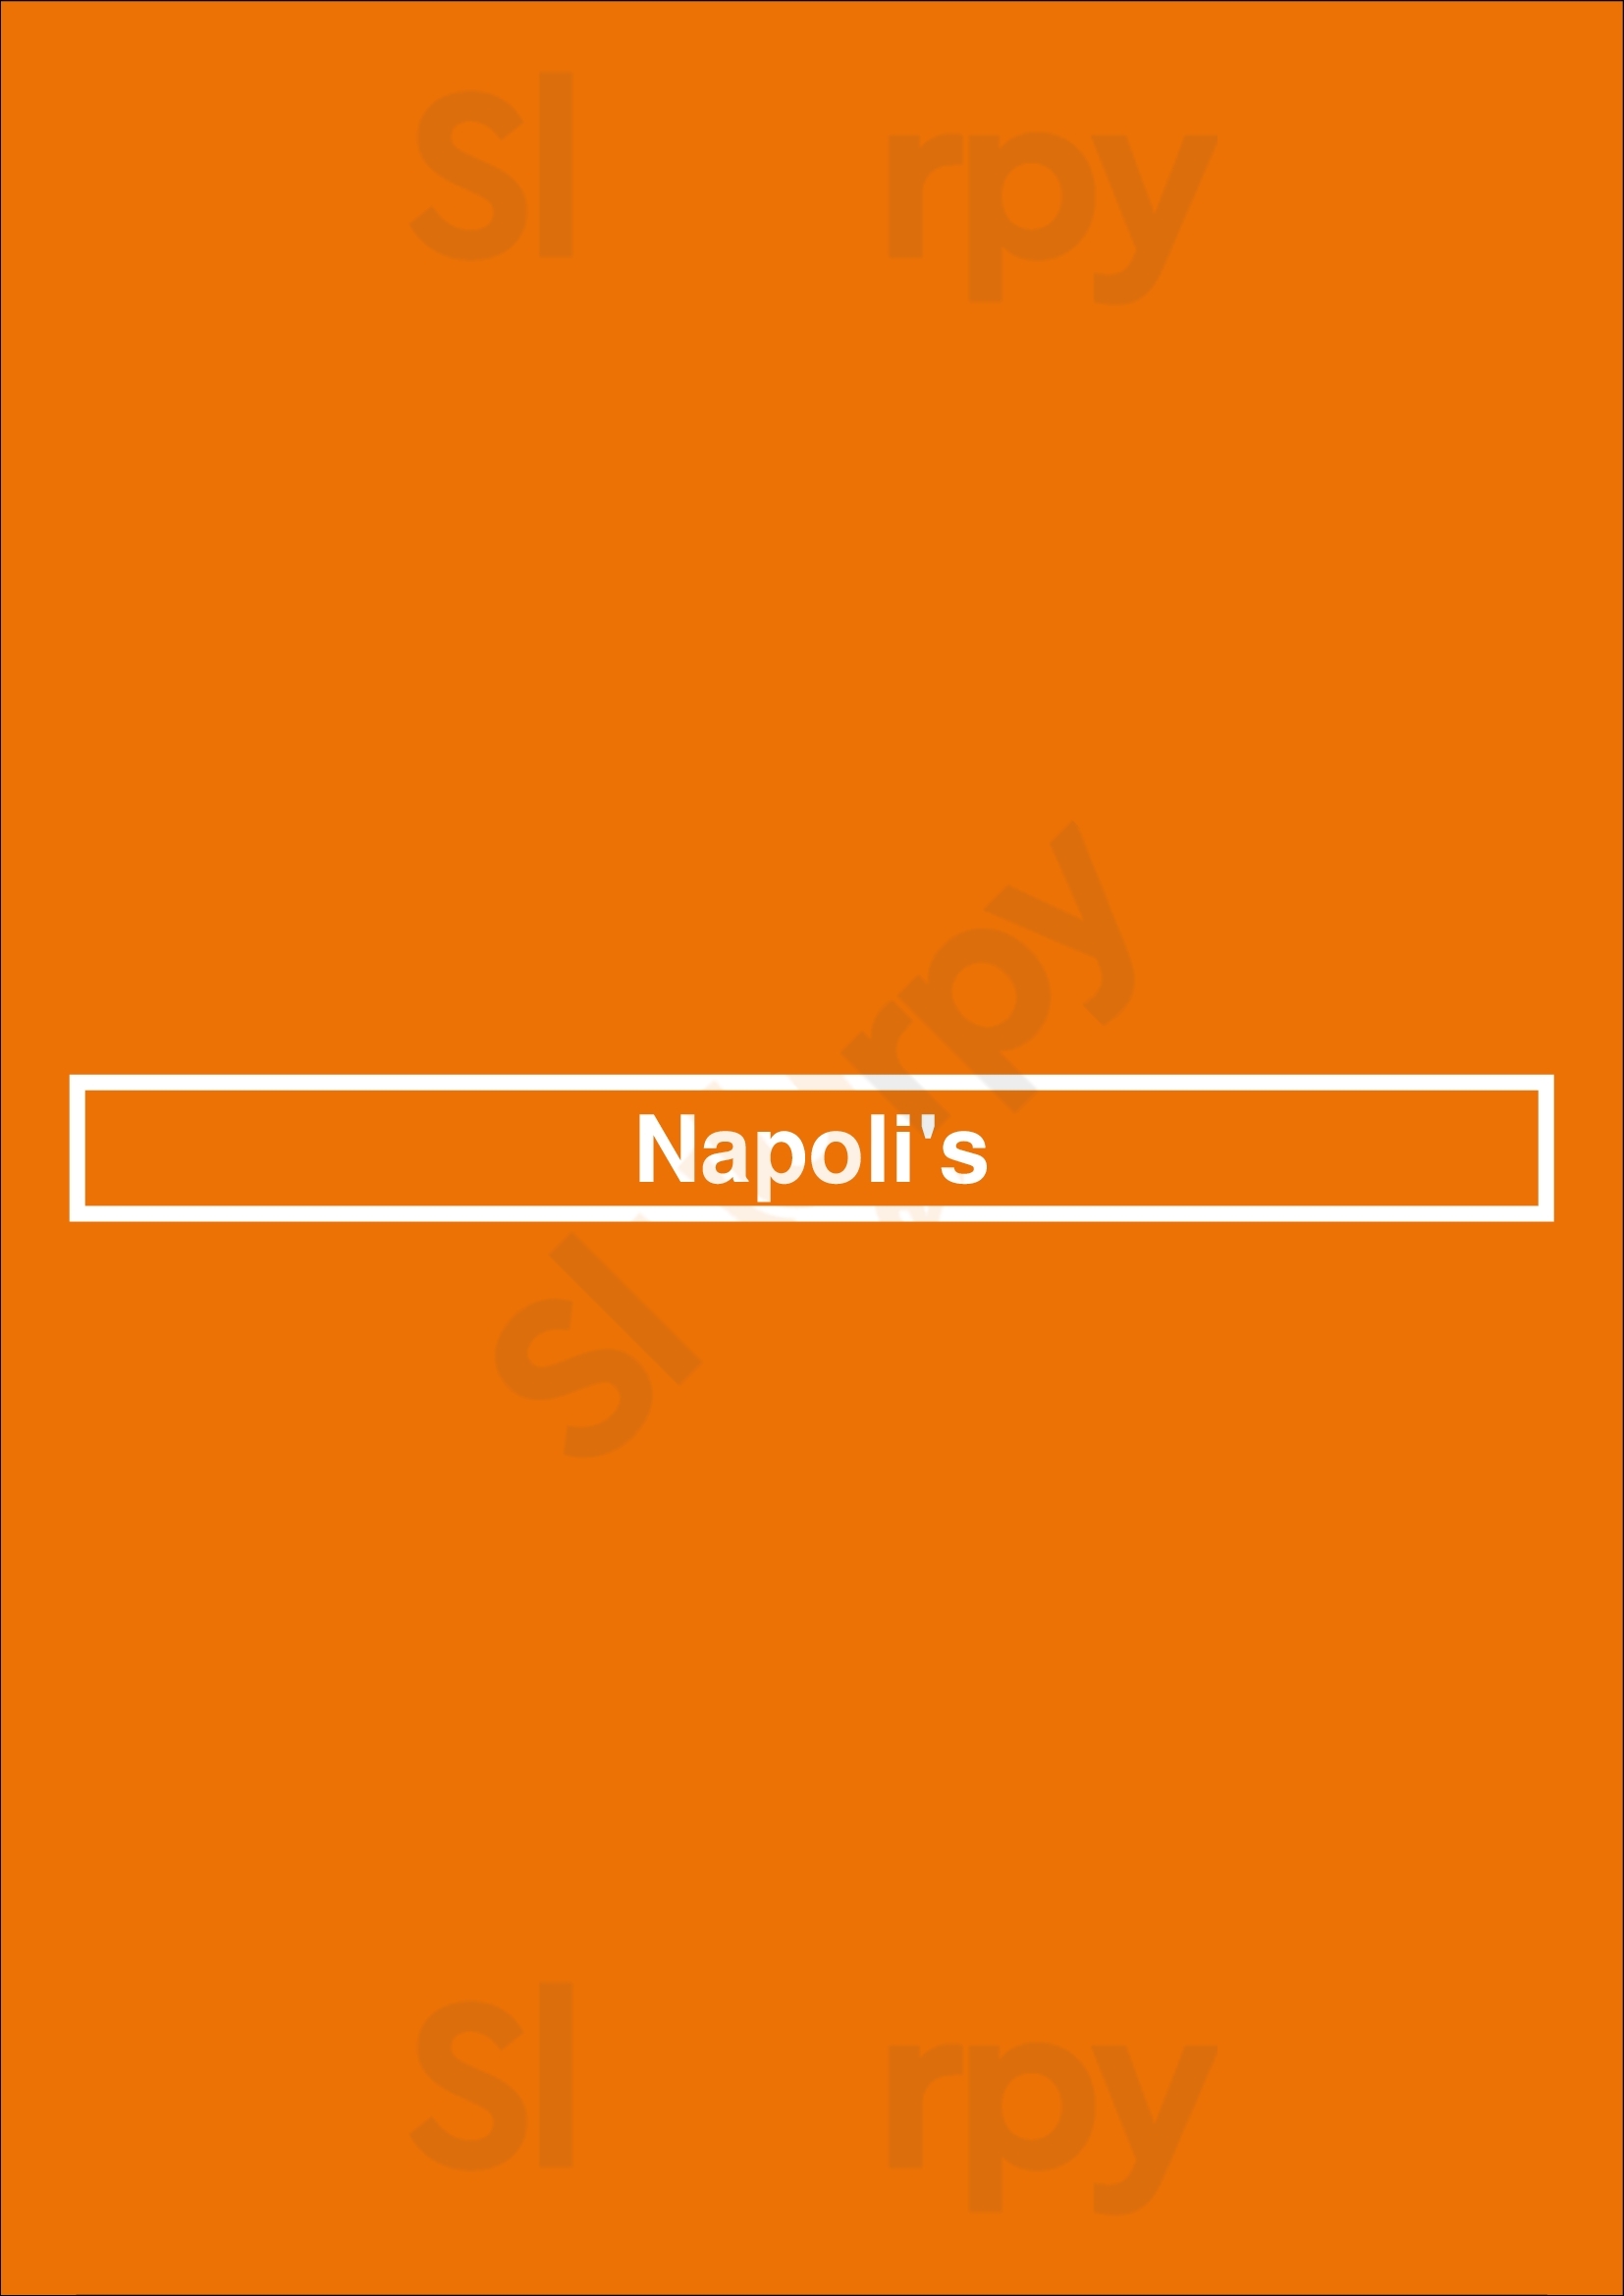 Napoli's Plano Menu - 1